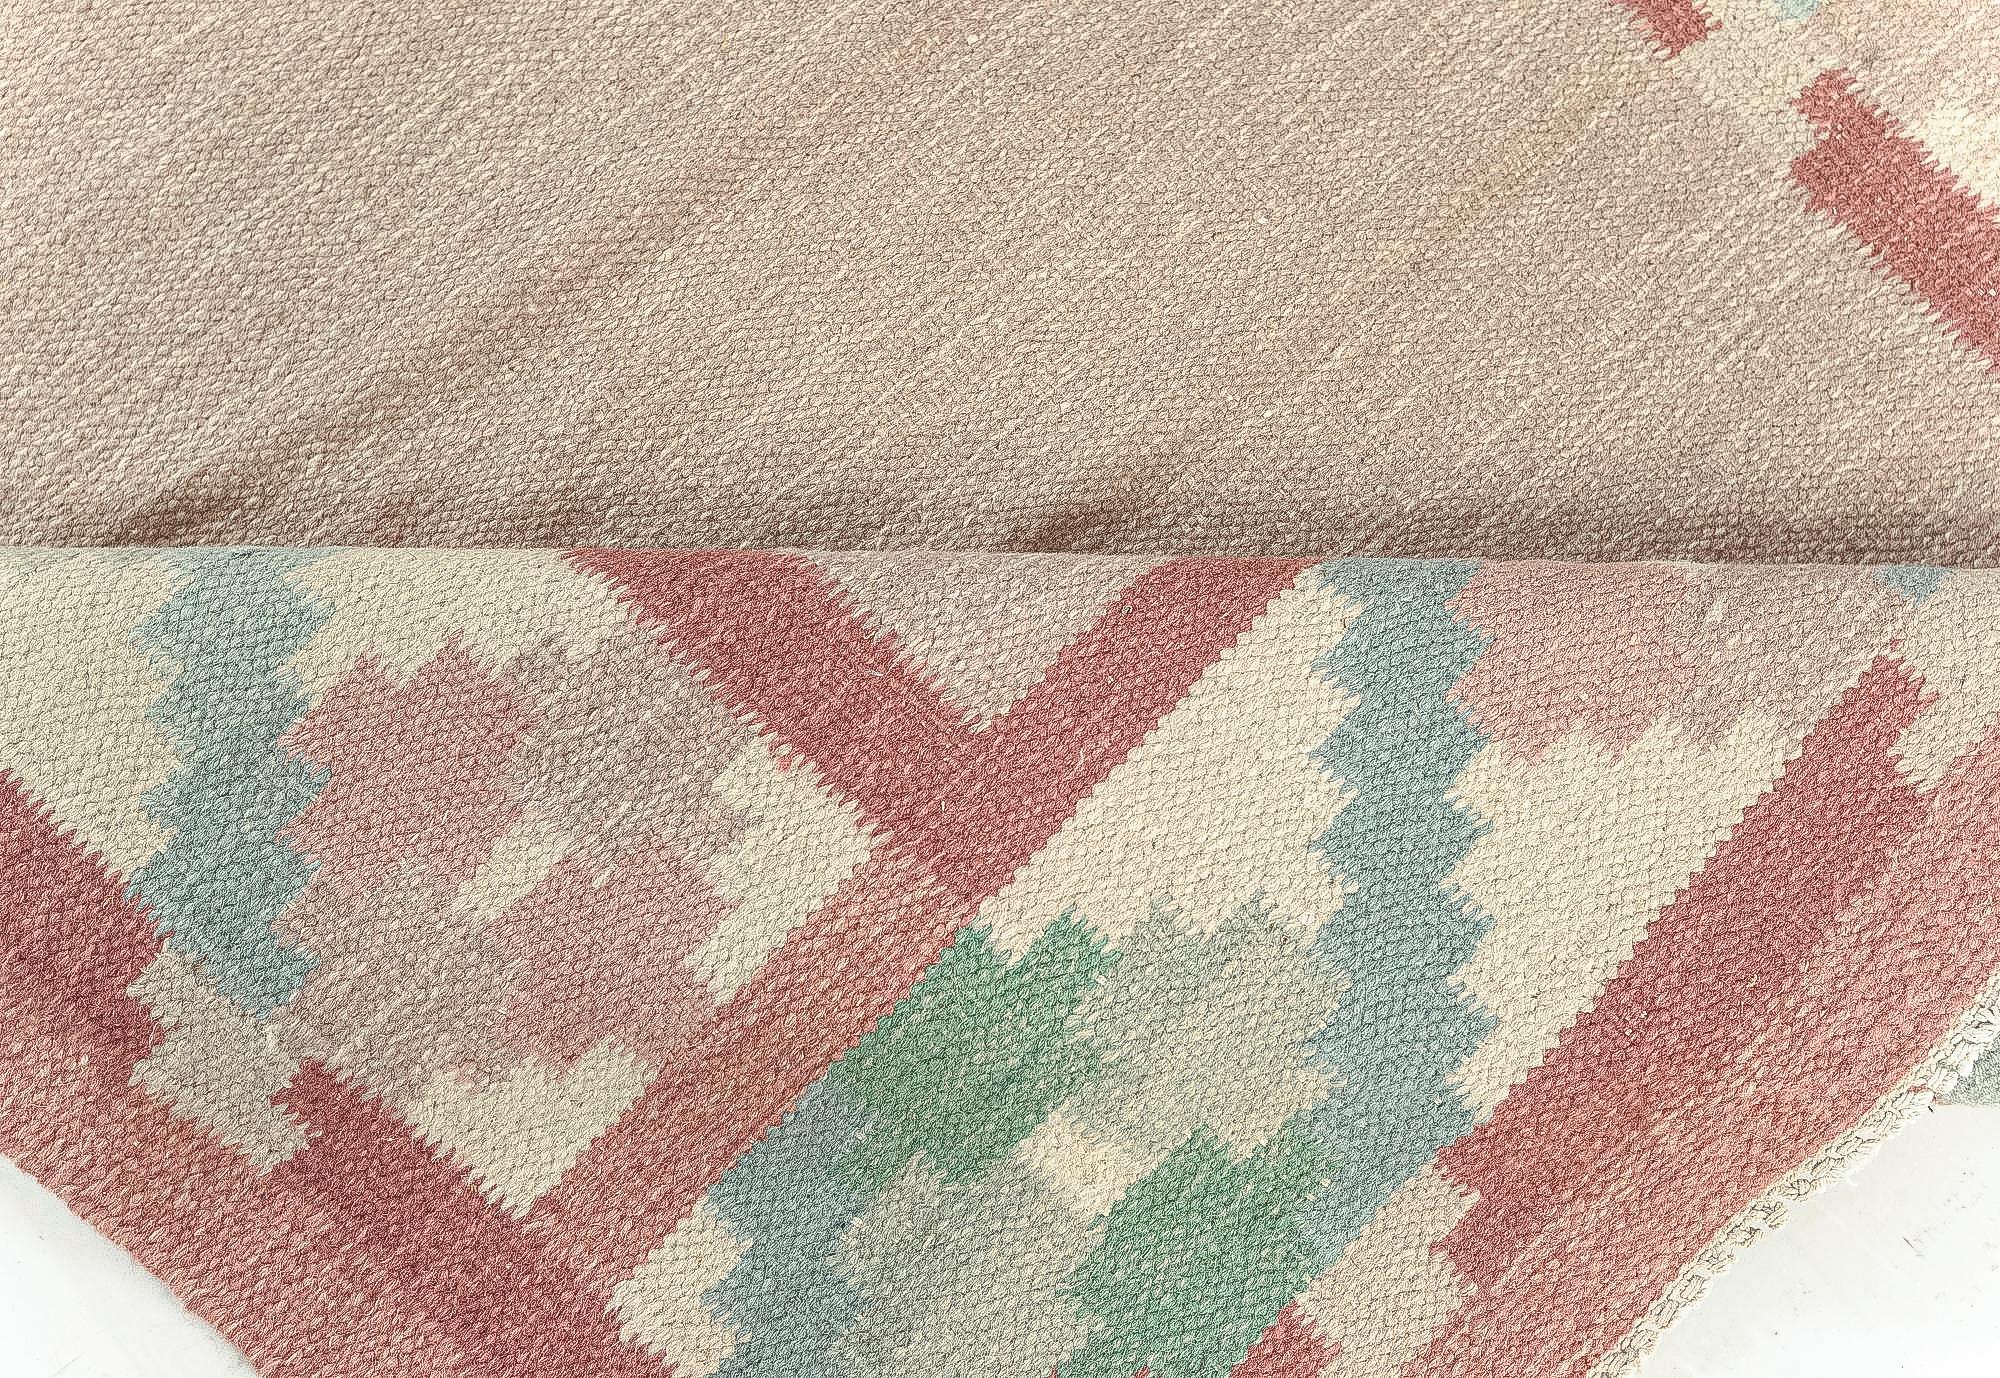 Vintage Swedish beige, green, pink flat weave rug.
Size: 6'3